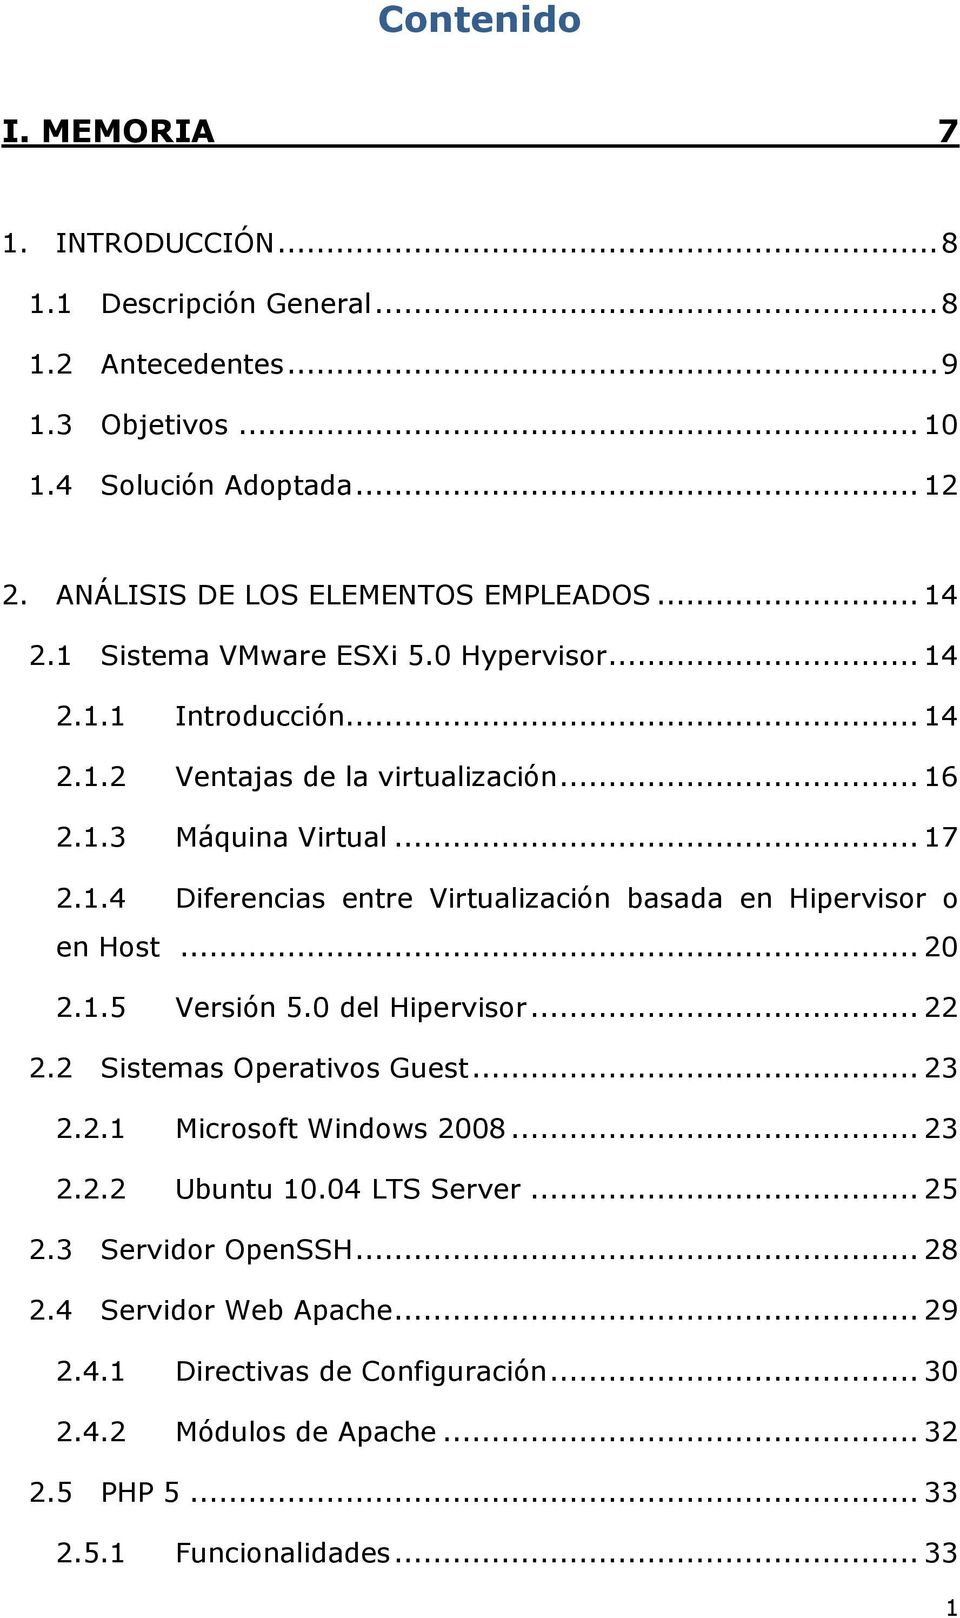 .. 17 2.1.4 Diferencias entre Virtualización basada en Hipervisor o en Host... 20 2.1.5 Versión 5.0 del Hipervisor... 22 2.2 Sistemas Operativos Guest... 23 2.2.1 Microsoft Windows 2008.